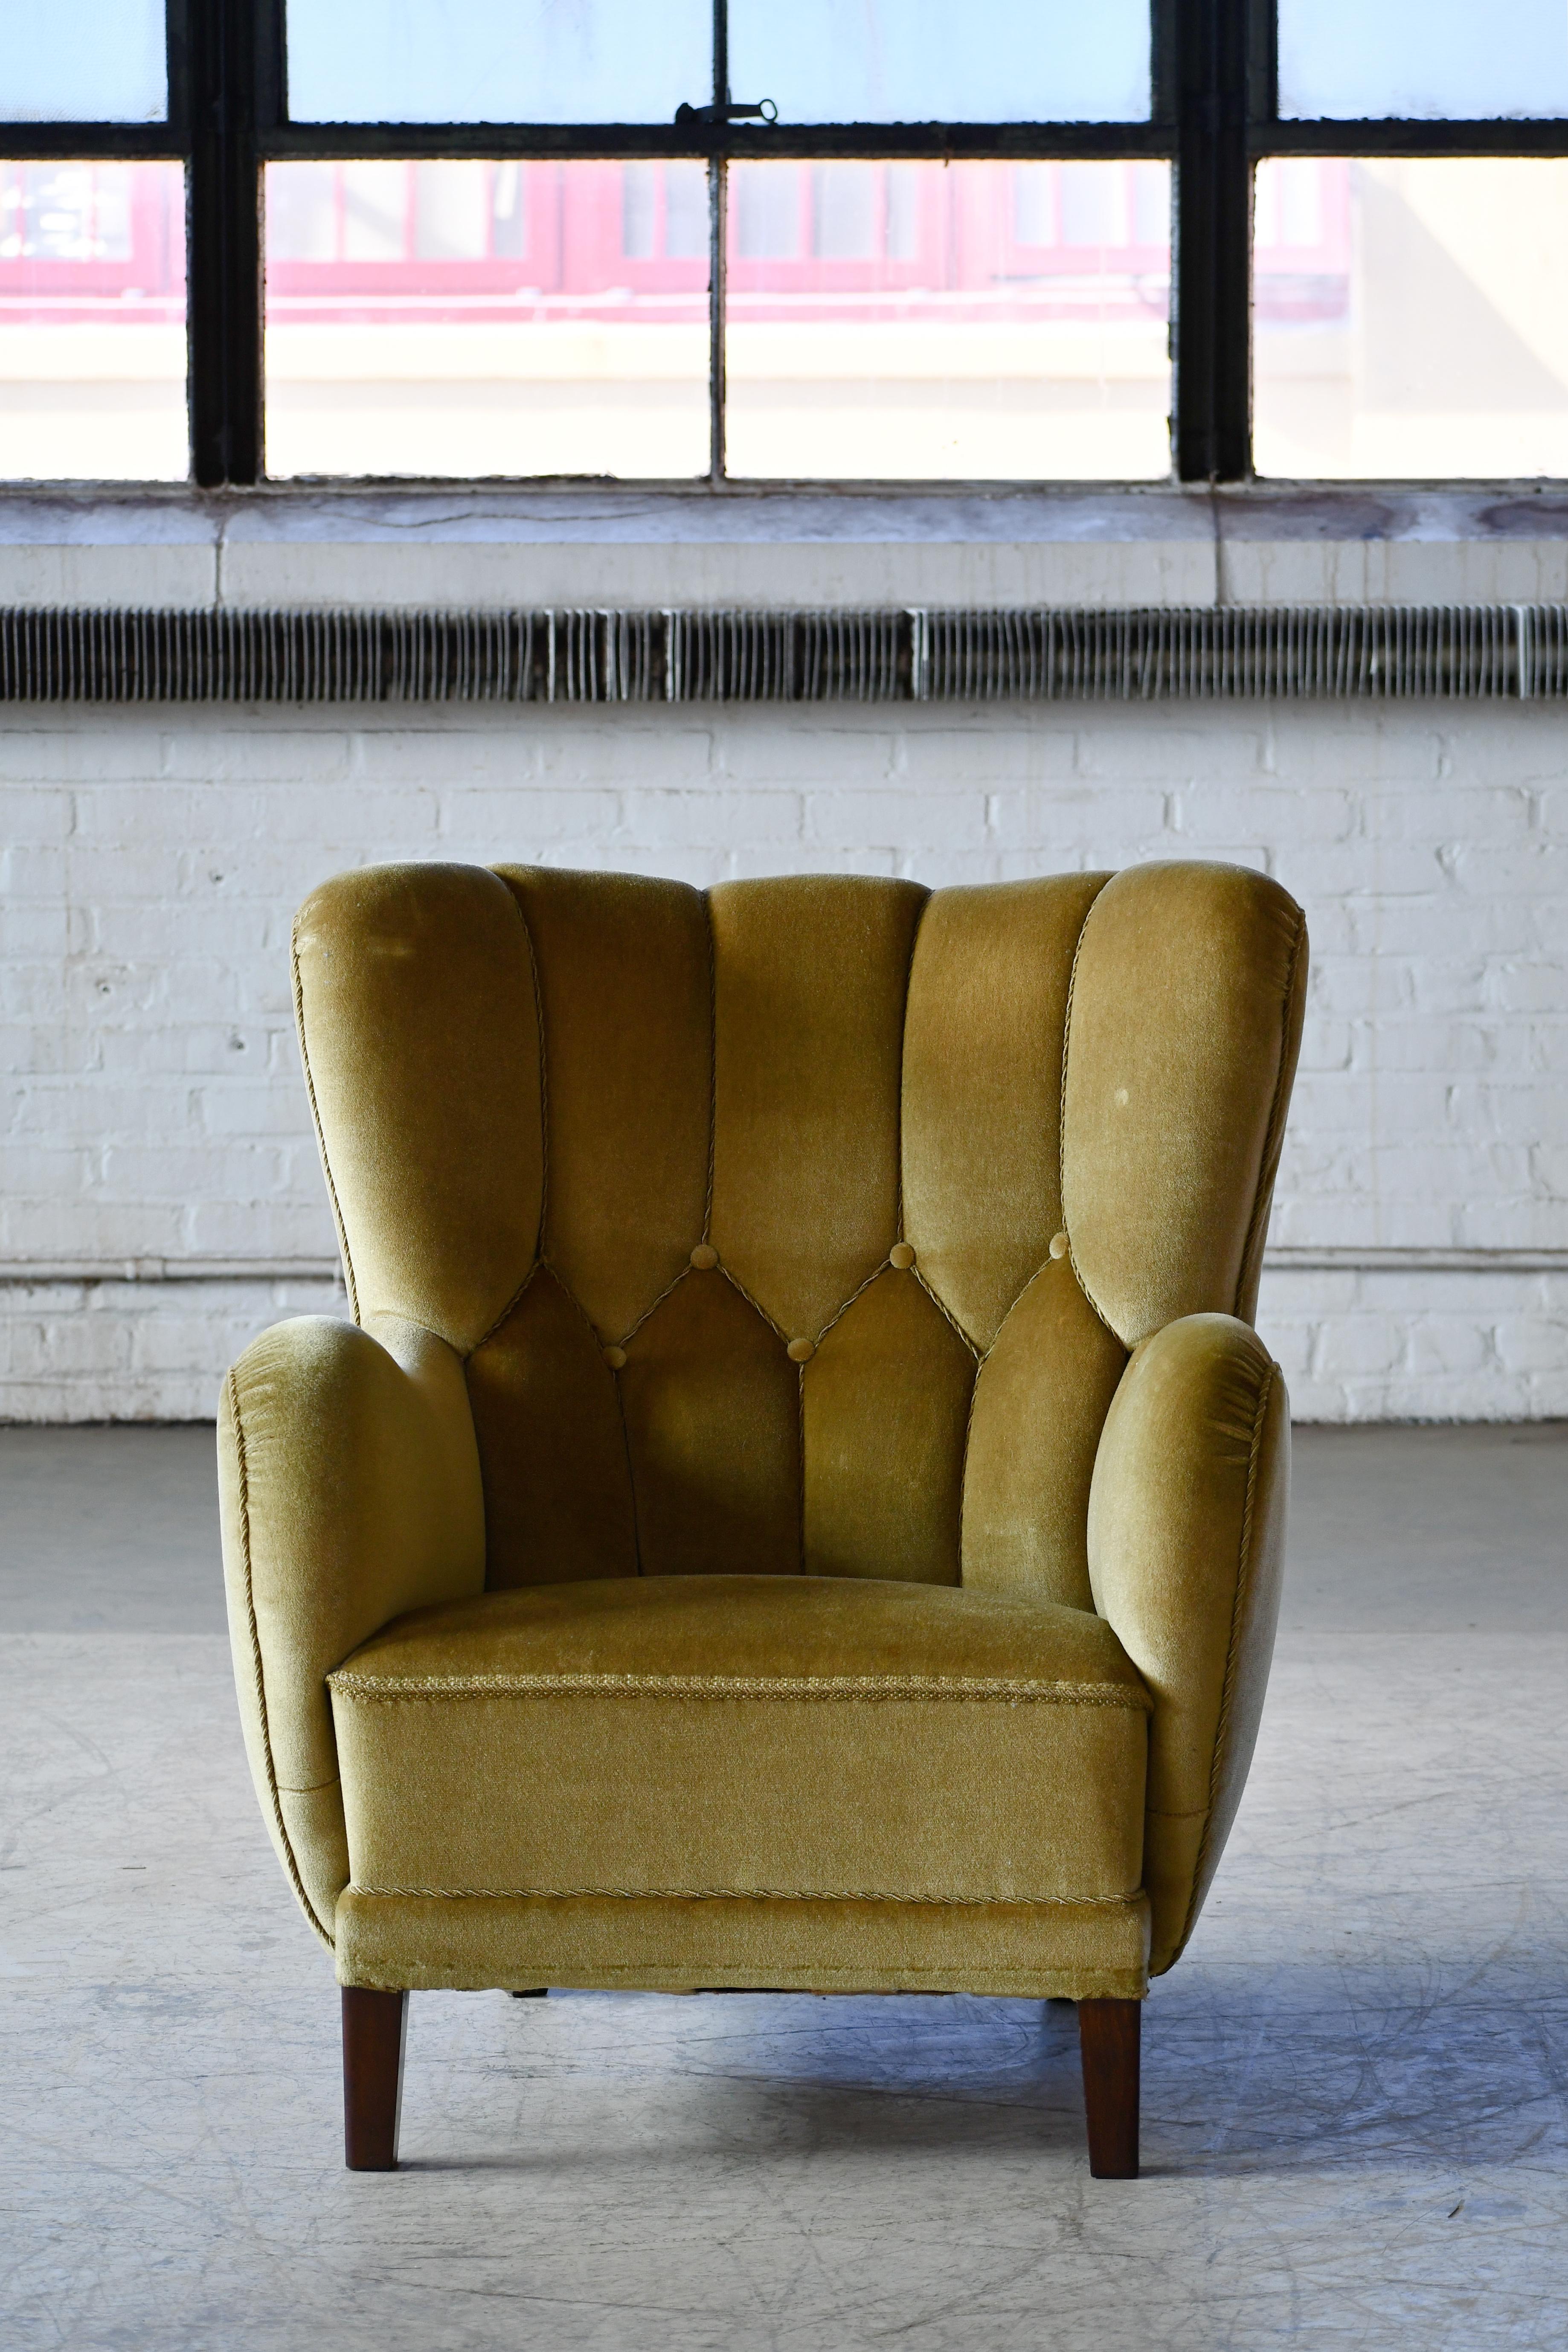 Super charmante chaise longue des années 1940 dans le style de Mogens Lassen avec une forme organique très sculpturale et des proportions harmonieuses. Polyvalent, il convient parfaitement aux espaces plus restreints qui ont besoin d'un message plus